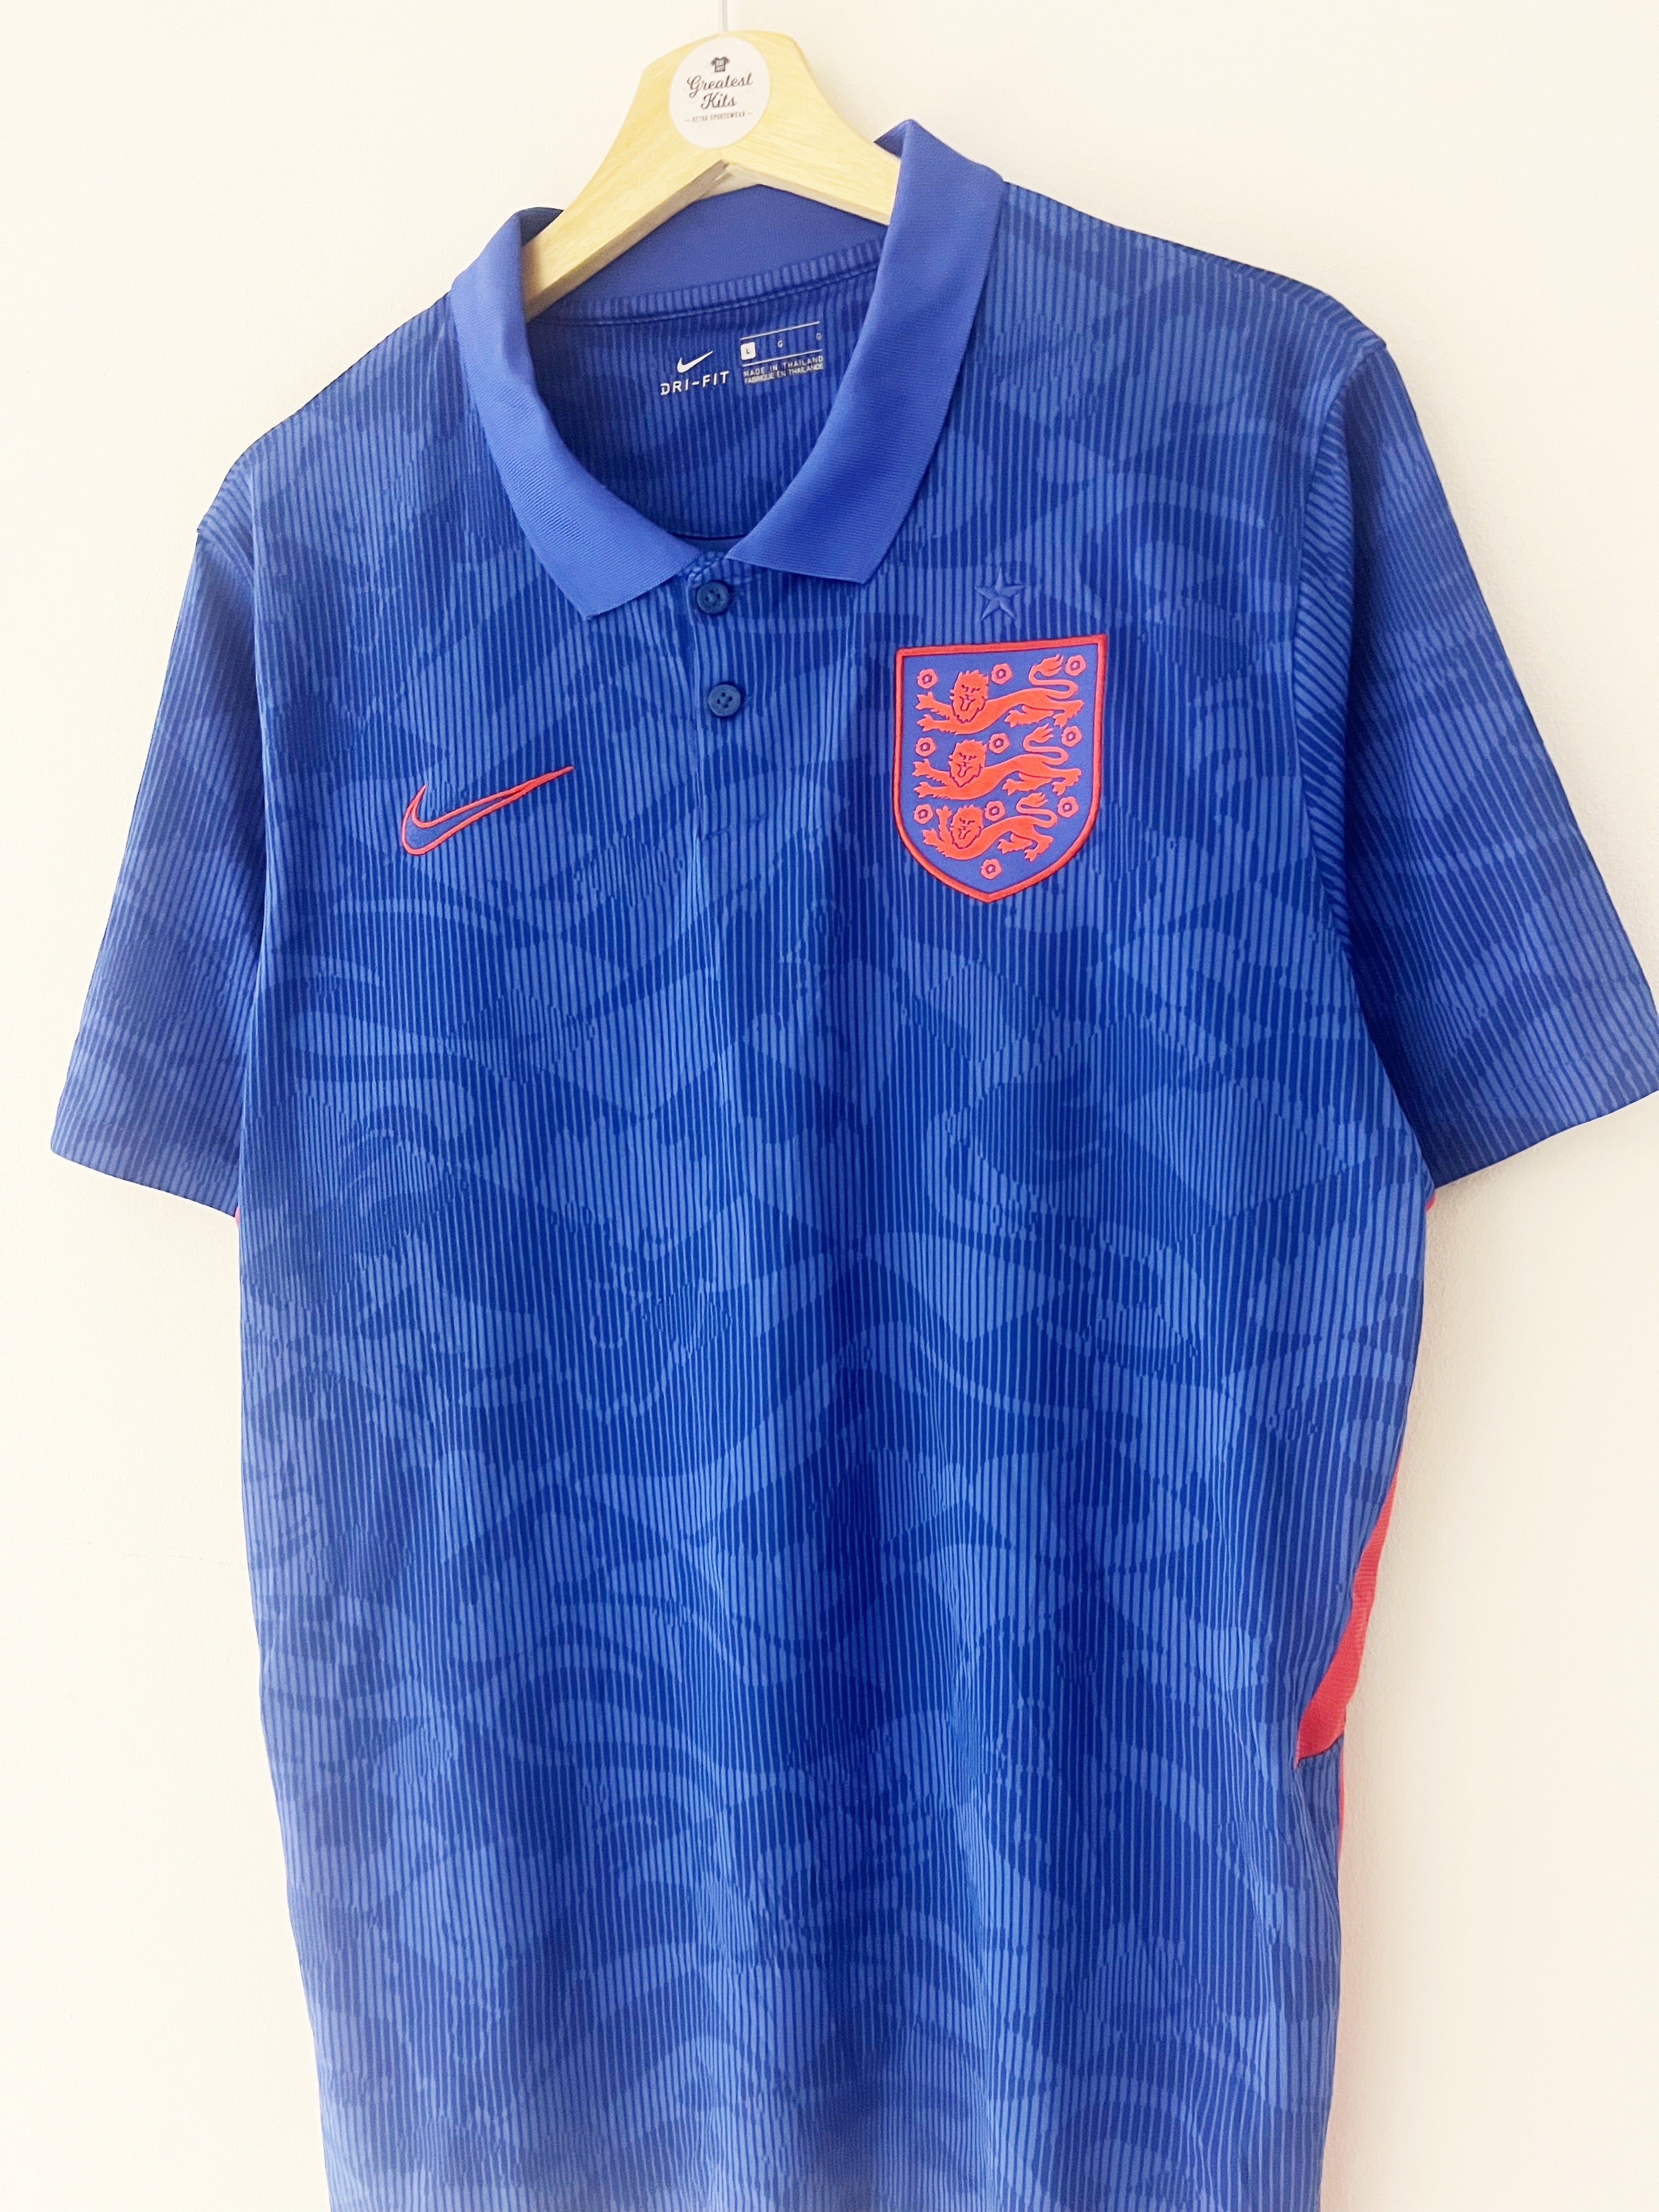 2020/21 England Away Shirt (L) 9/10